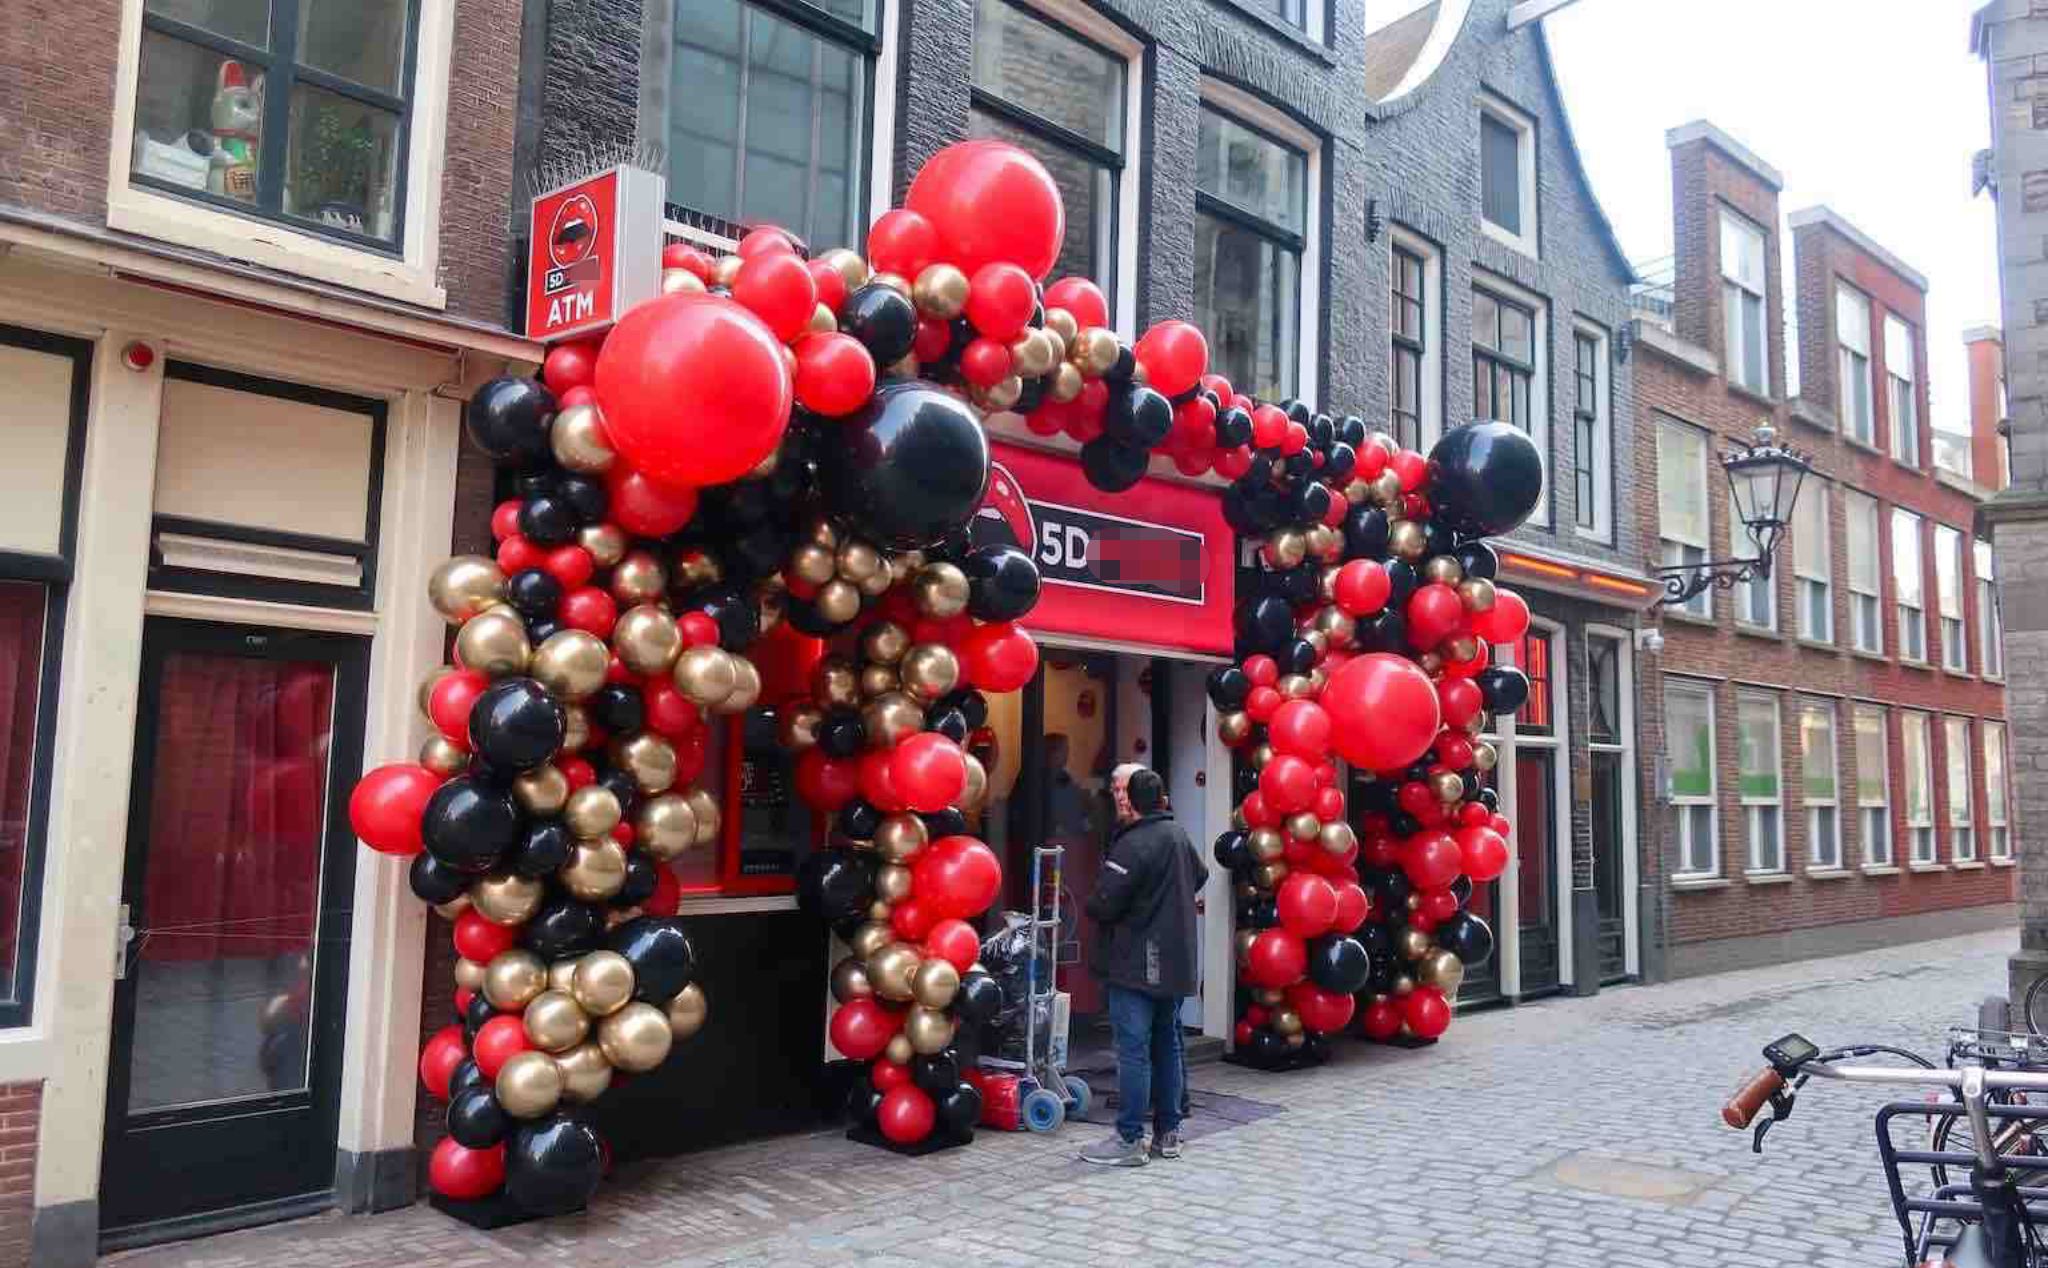 Amsterdam có rạp chiếu phim người lớn 5D đầu tiên trên thế giới